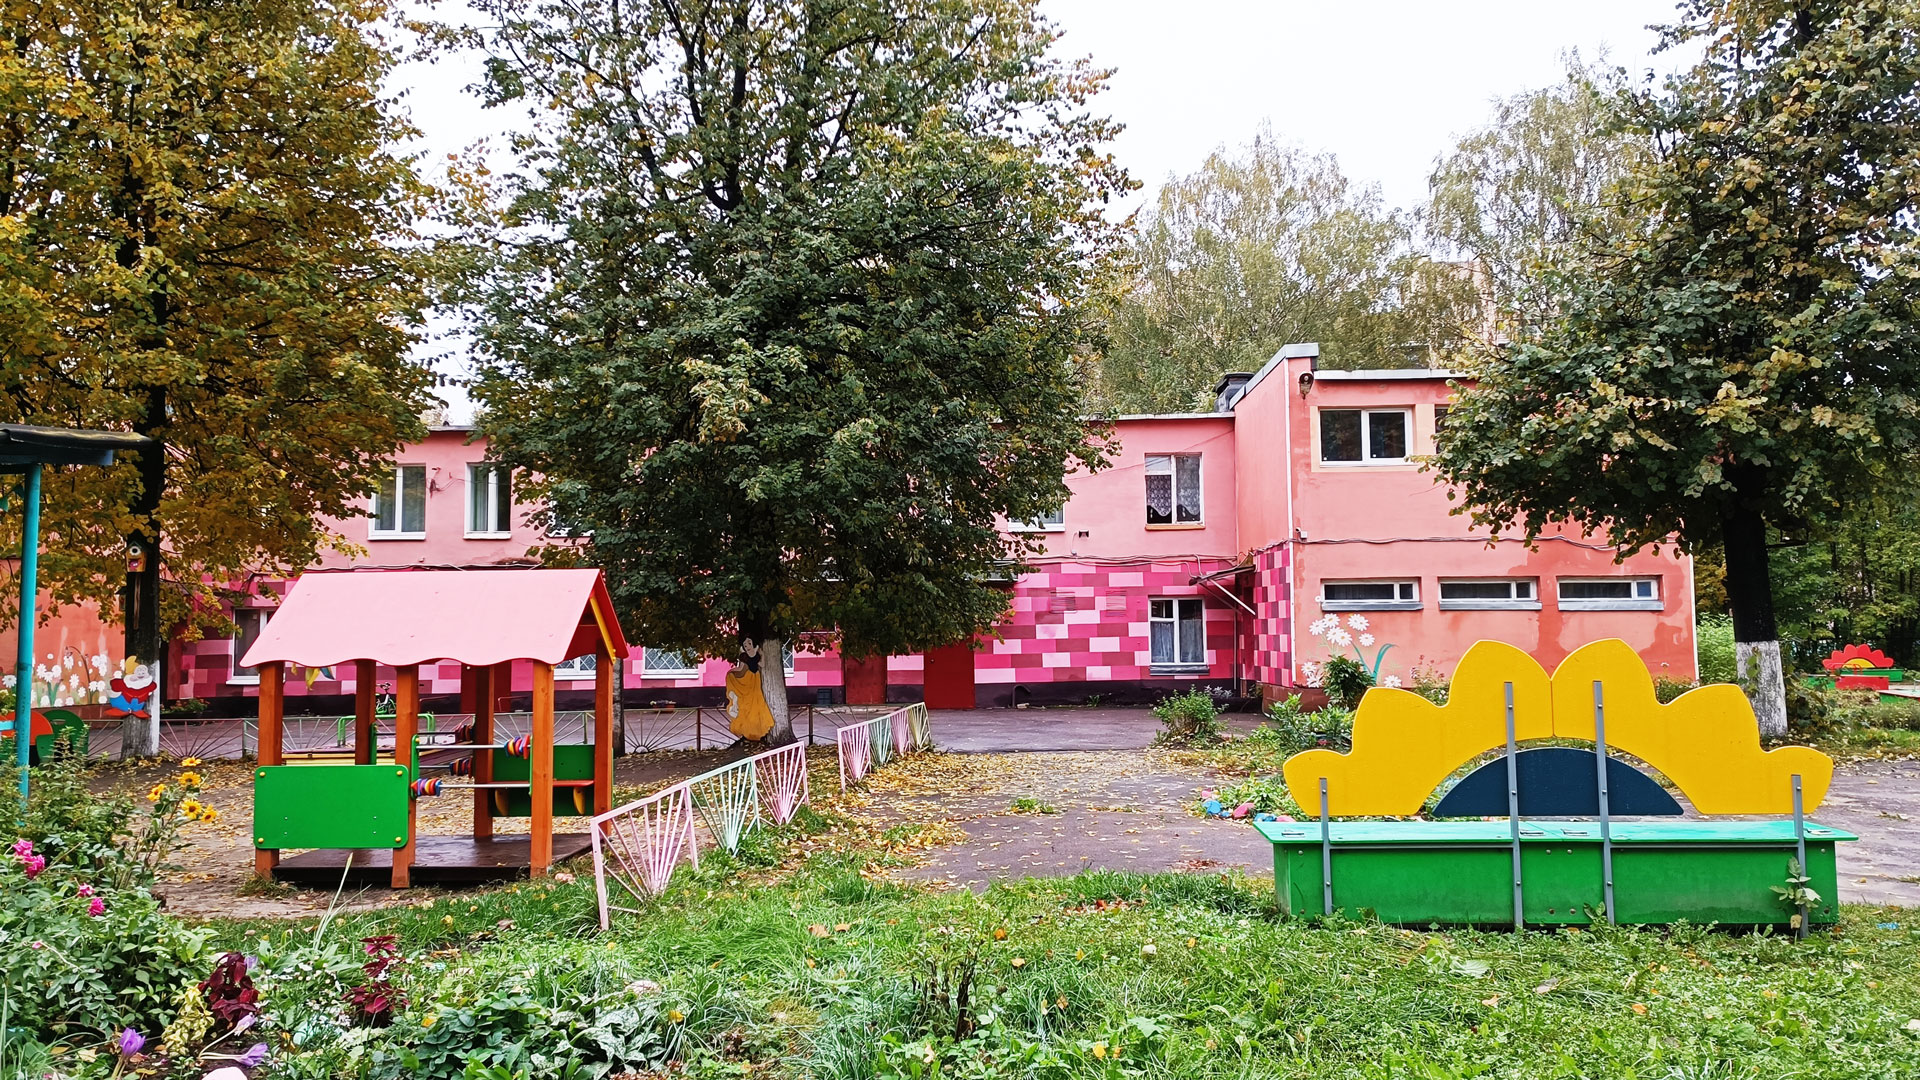 Детский сад 190 Ярославль: общий вид здания.